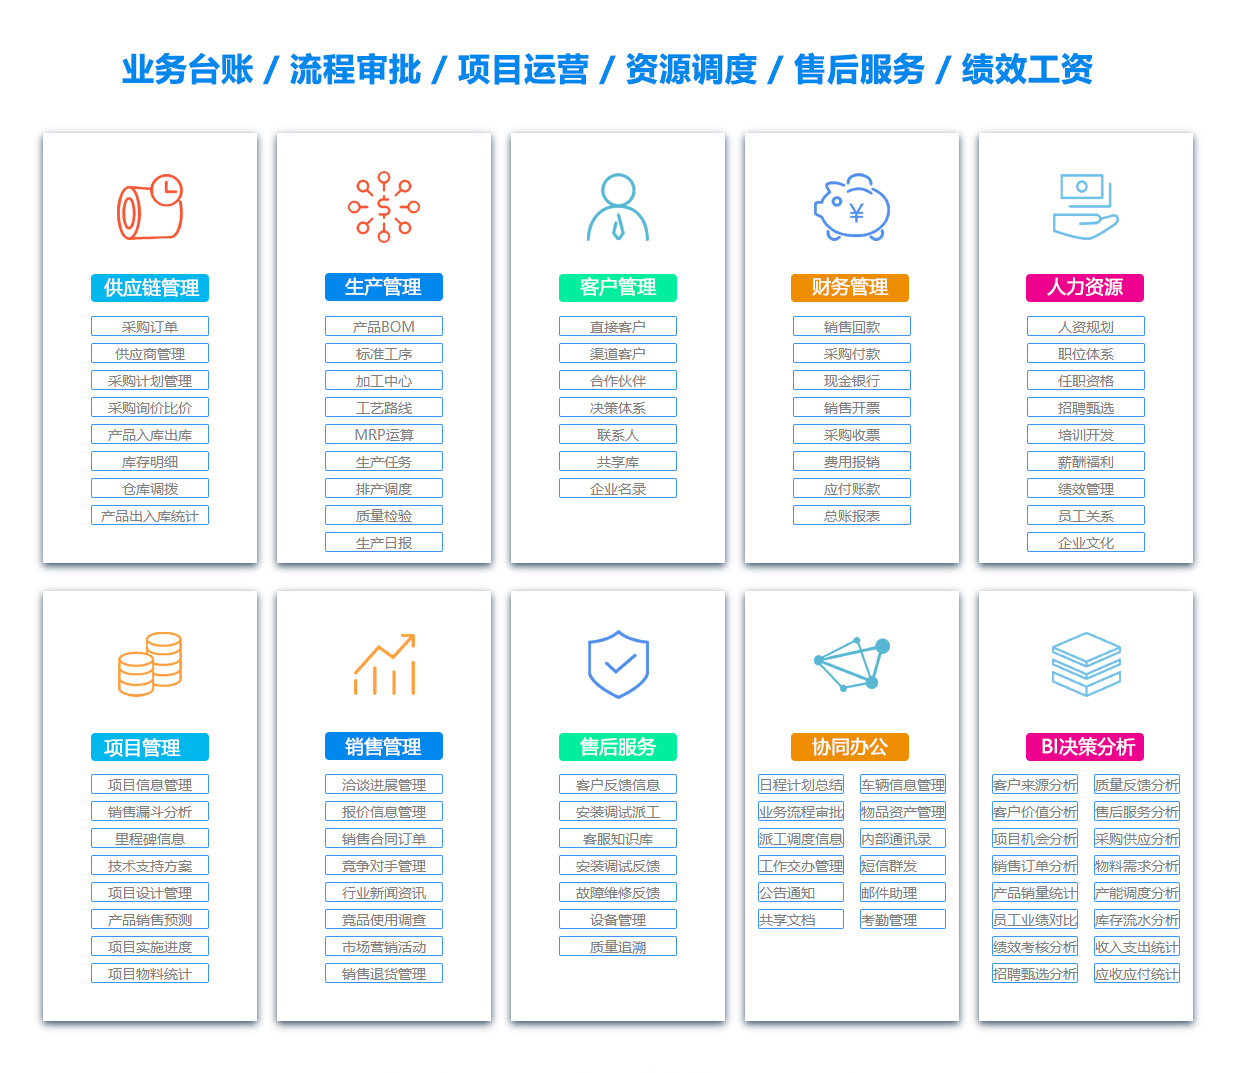 丽江客户资料管理系统